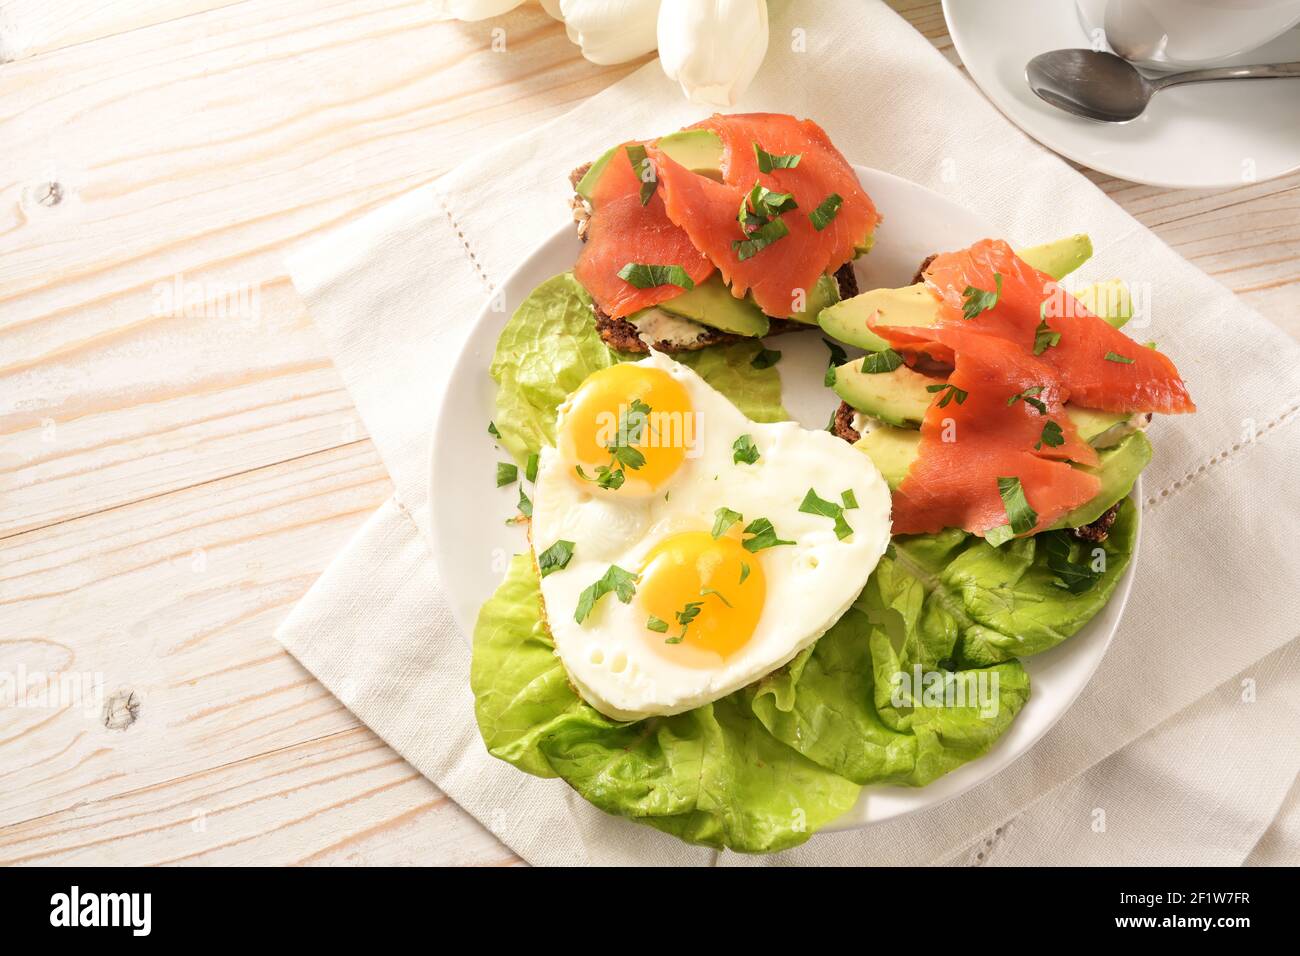 Deux œufs frits en forme de coeur, sandwichs avec avocat et saumon fumé sur salade de laitue, recette avec amour pour pâques ou Saint Valentin, bois blanc Banque D'Images